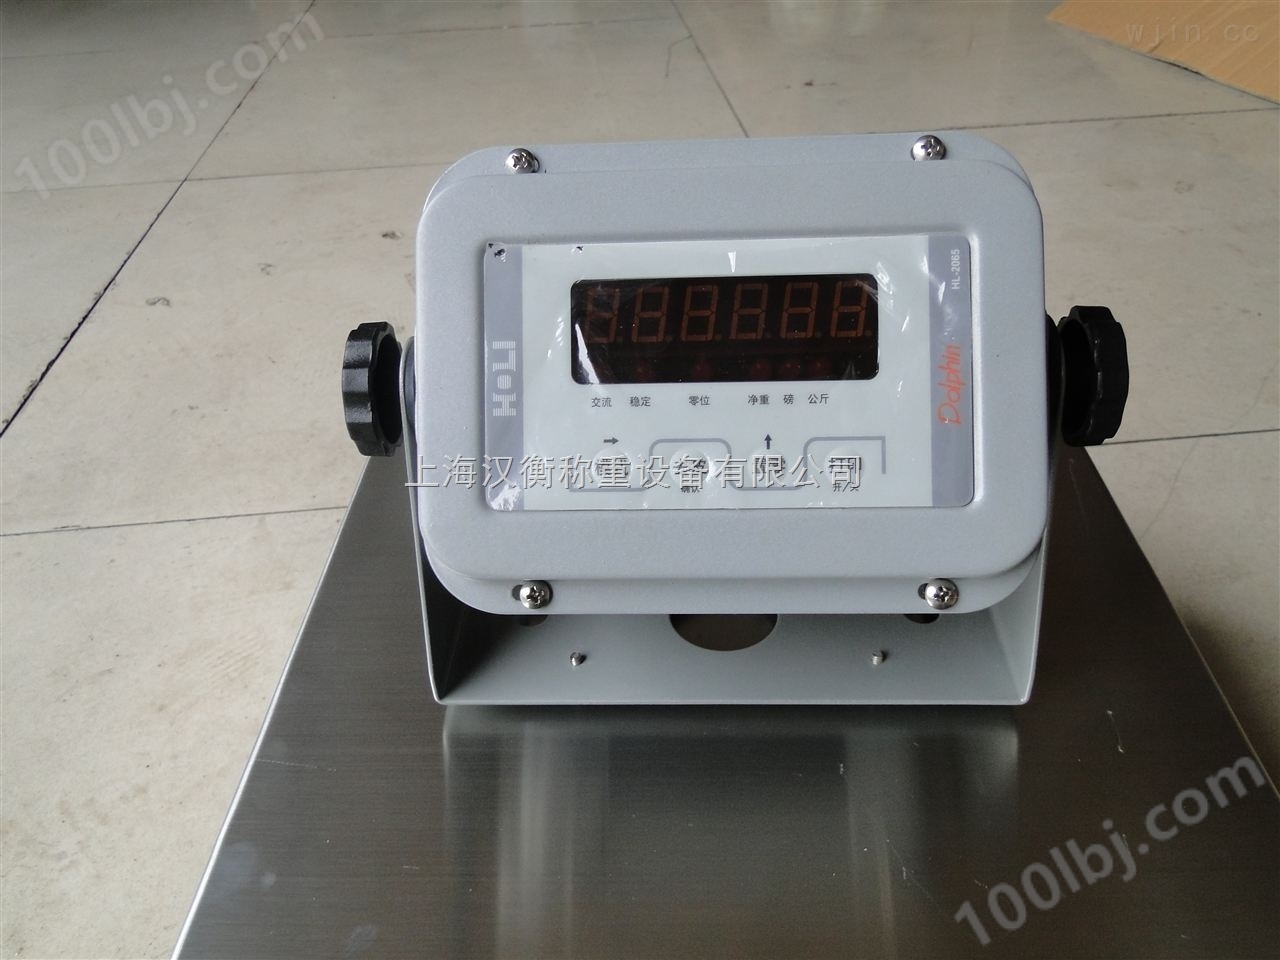 武汉300kg不锈钢电子磅价格/300kg平台秤哪家好